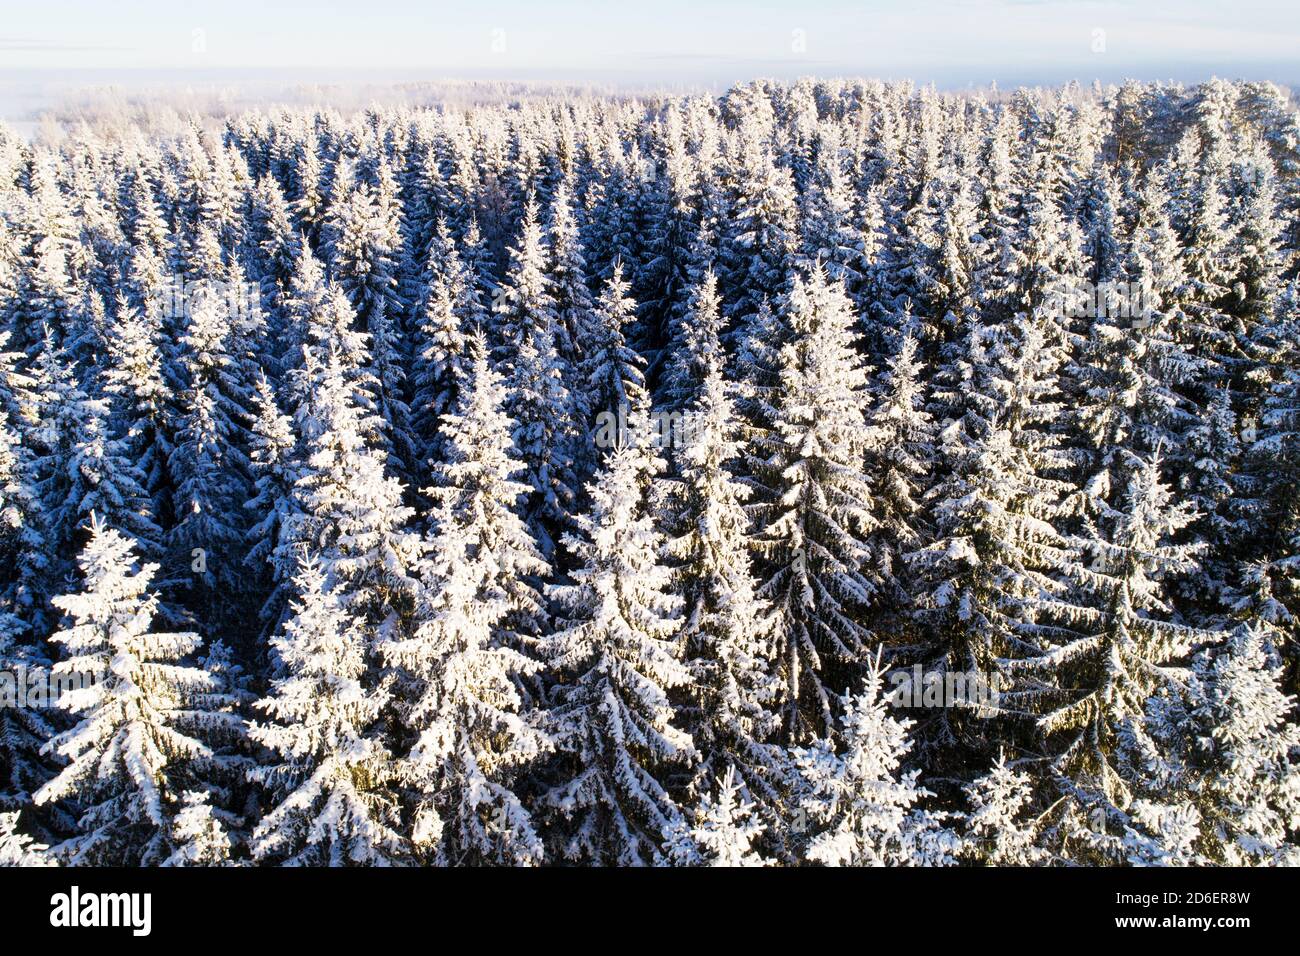 Una vista aerea di alberi fitti coperti di neve nel paese delle meraviglie invernali durante il freddo e bel tempo nella foresta boreale estone, Europa del Nord. Foto Stock